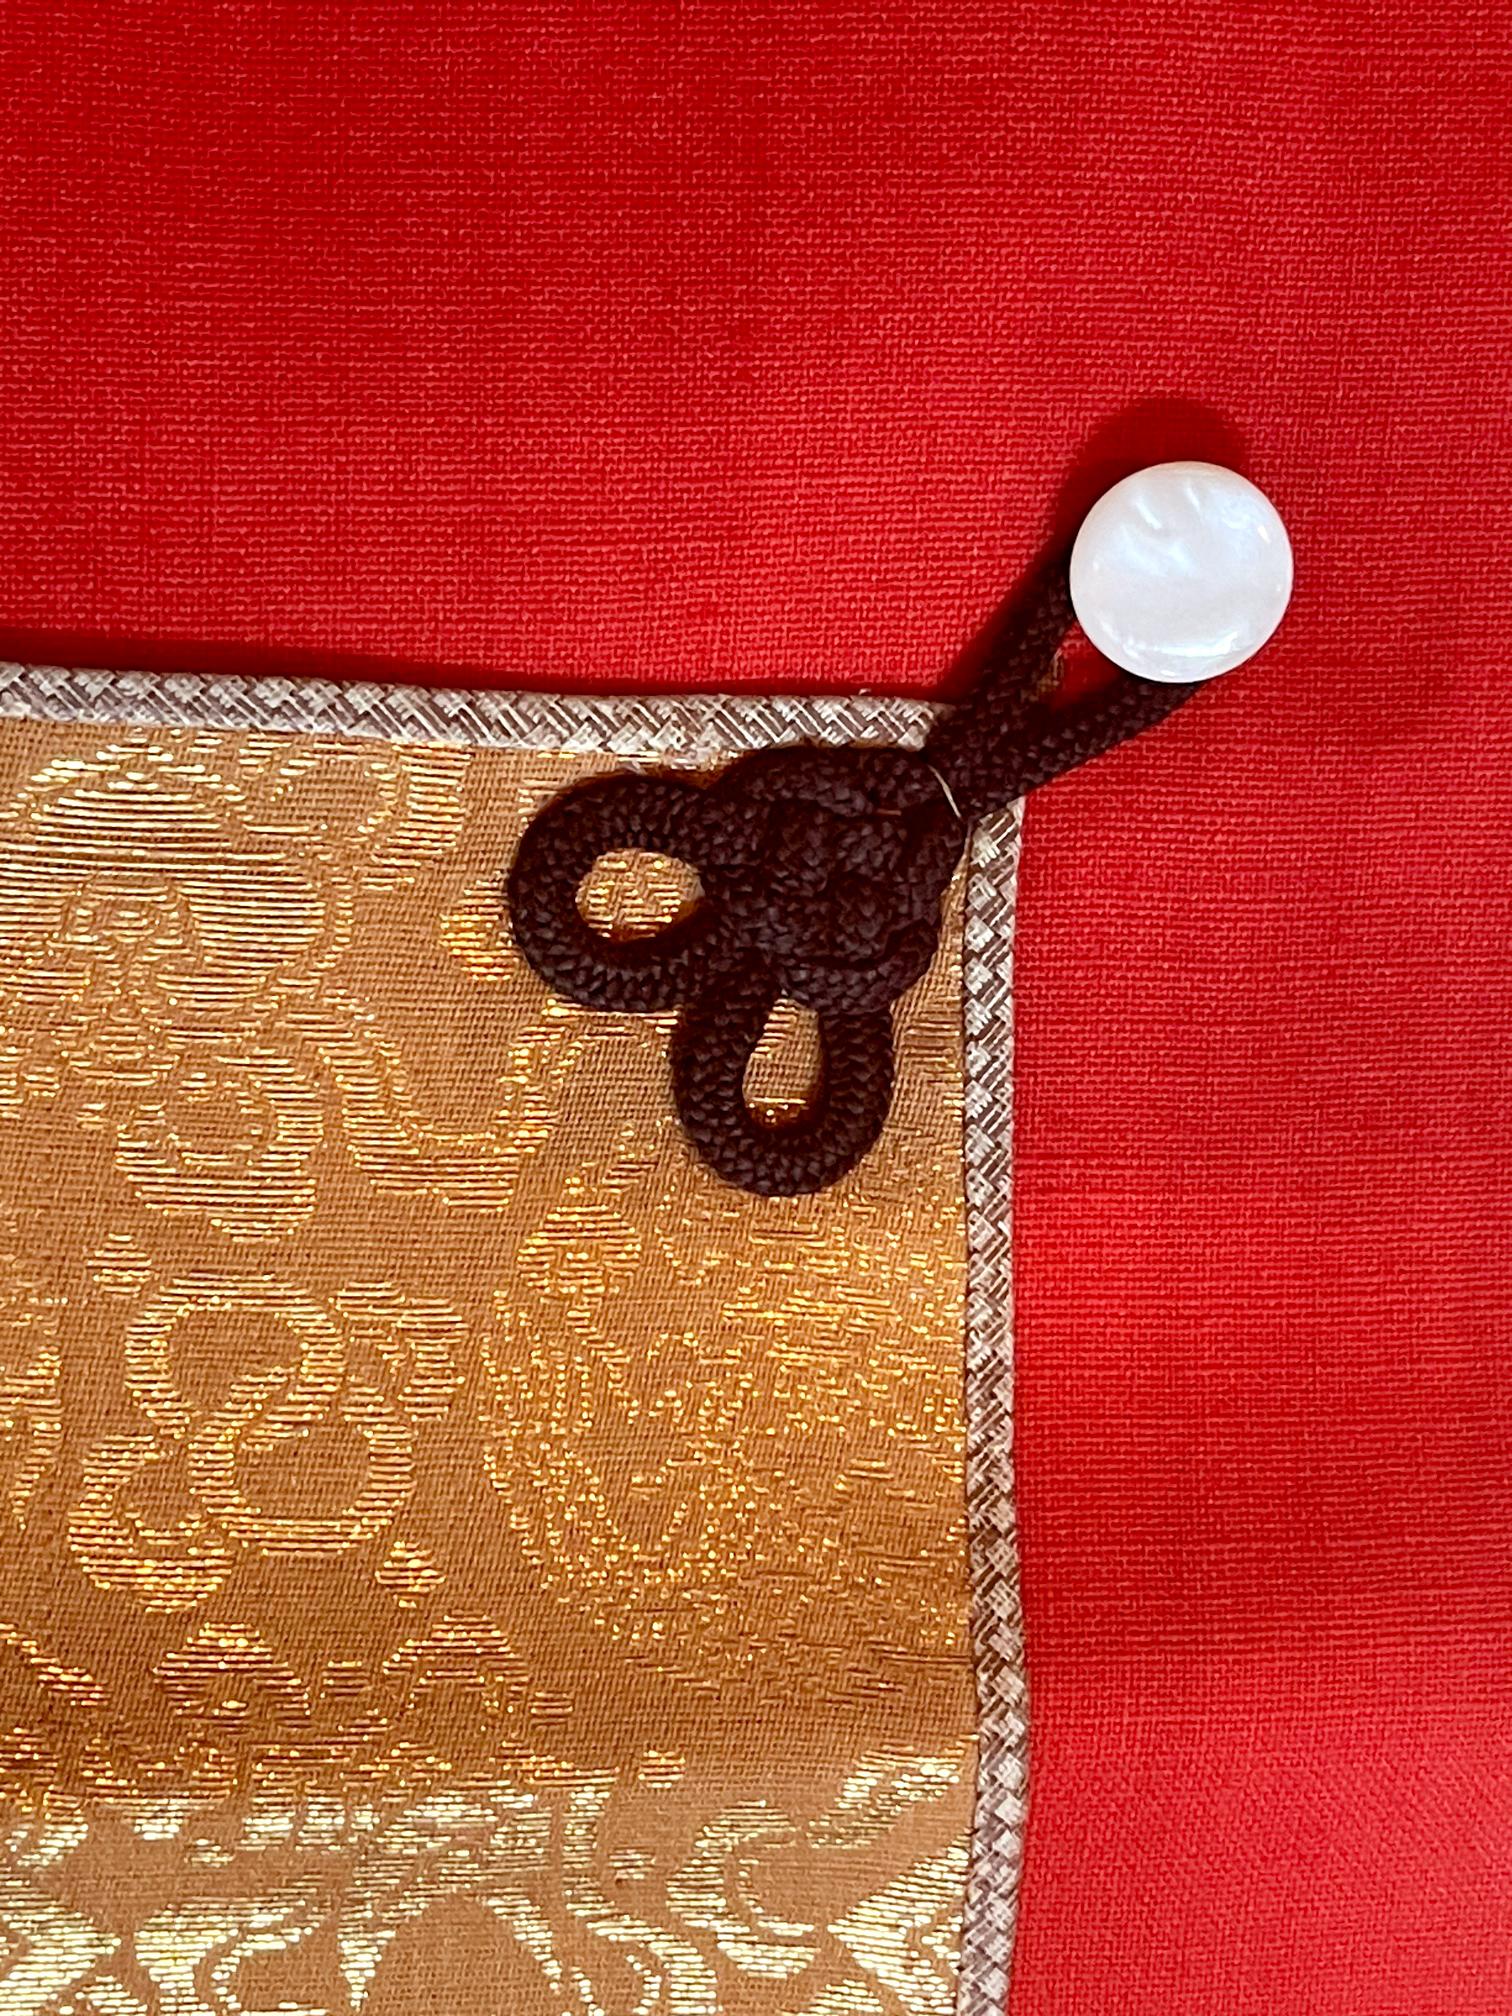 XIXe siècle Antiquités japonaises Textile Art Campaign Jacket Jinbaori with Mon en vente